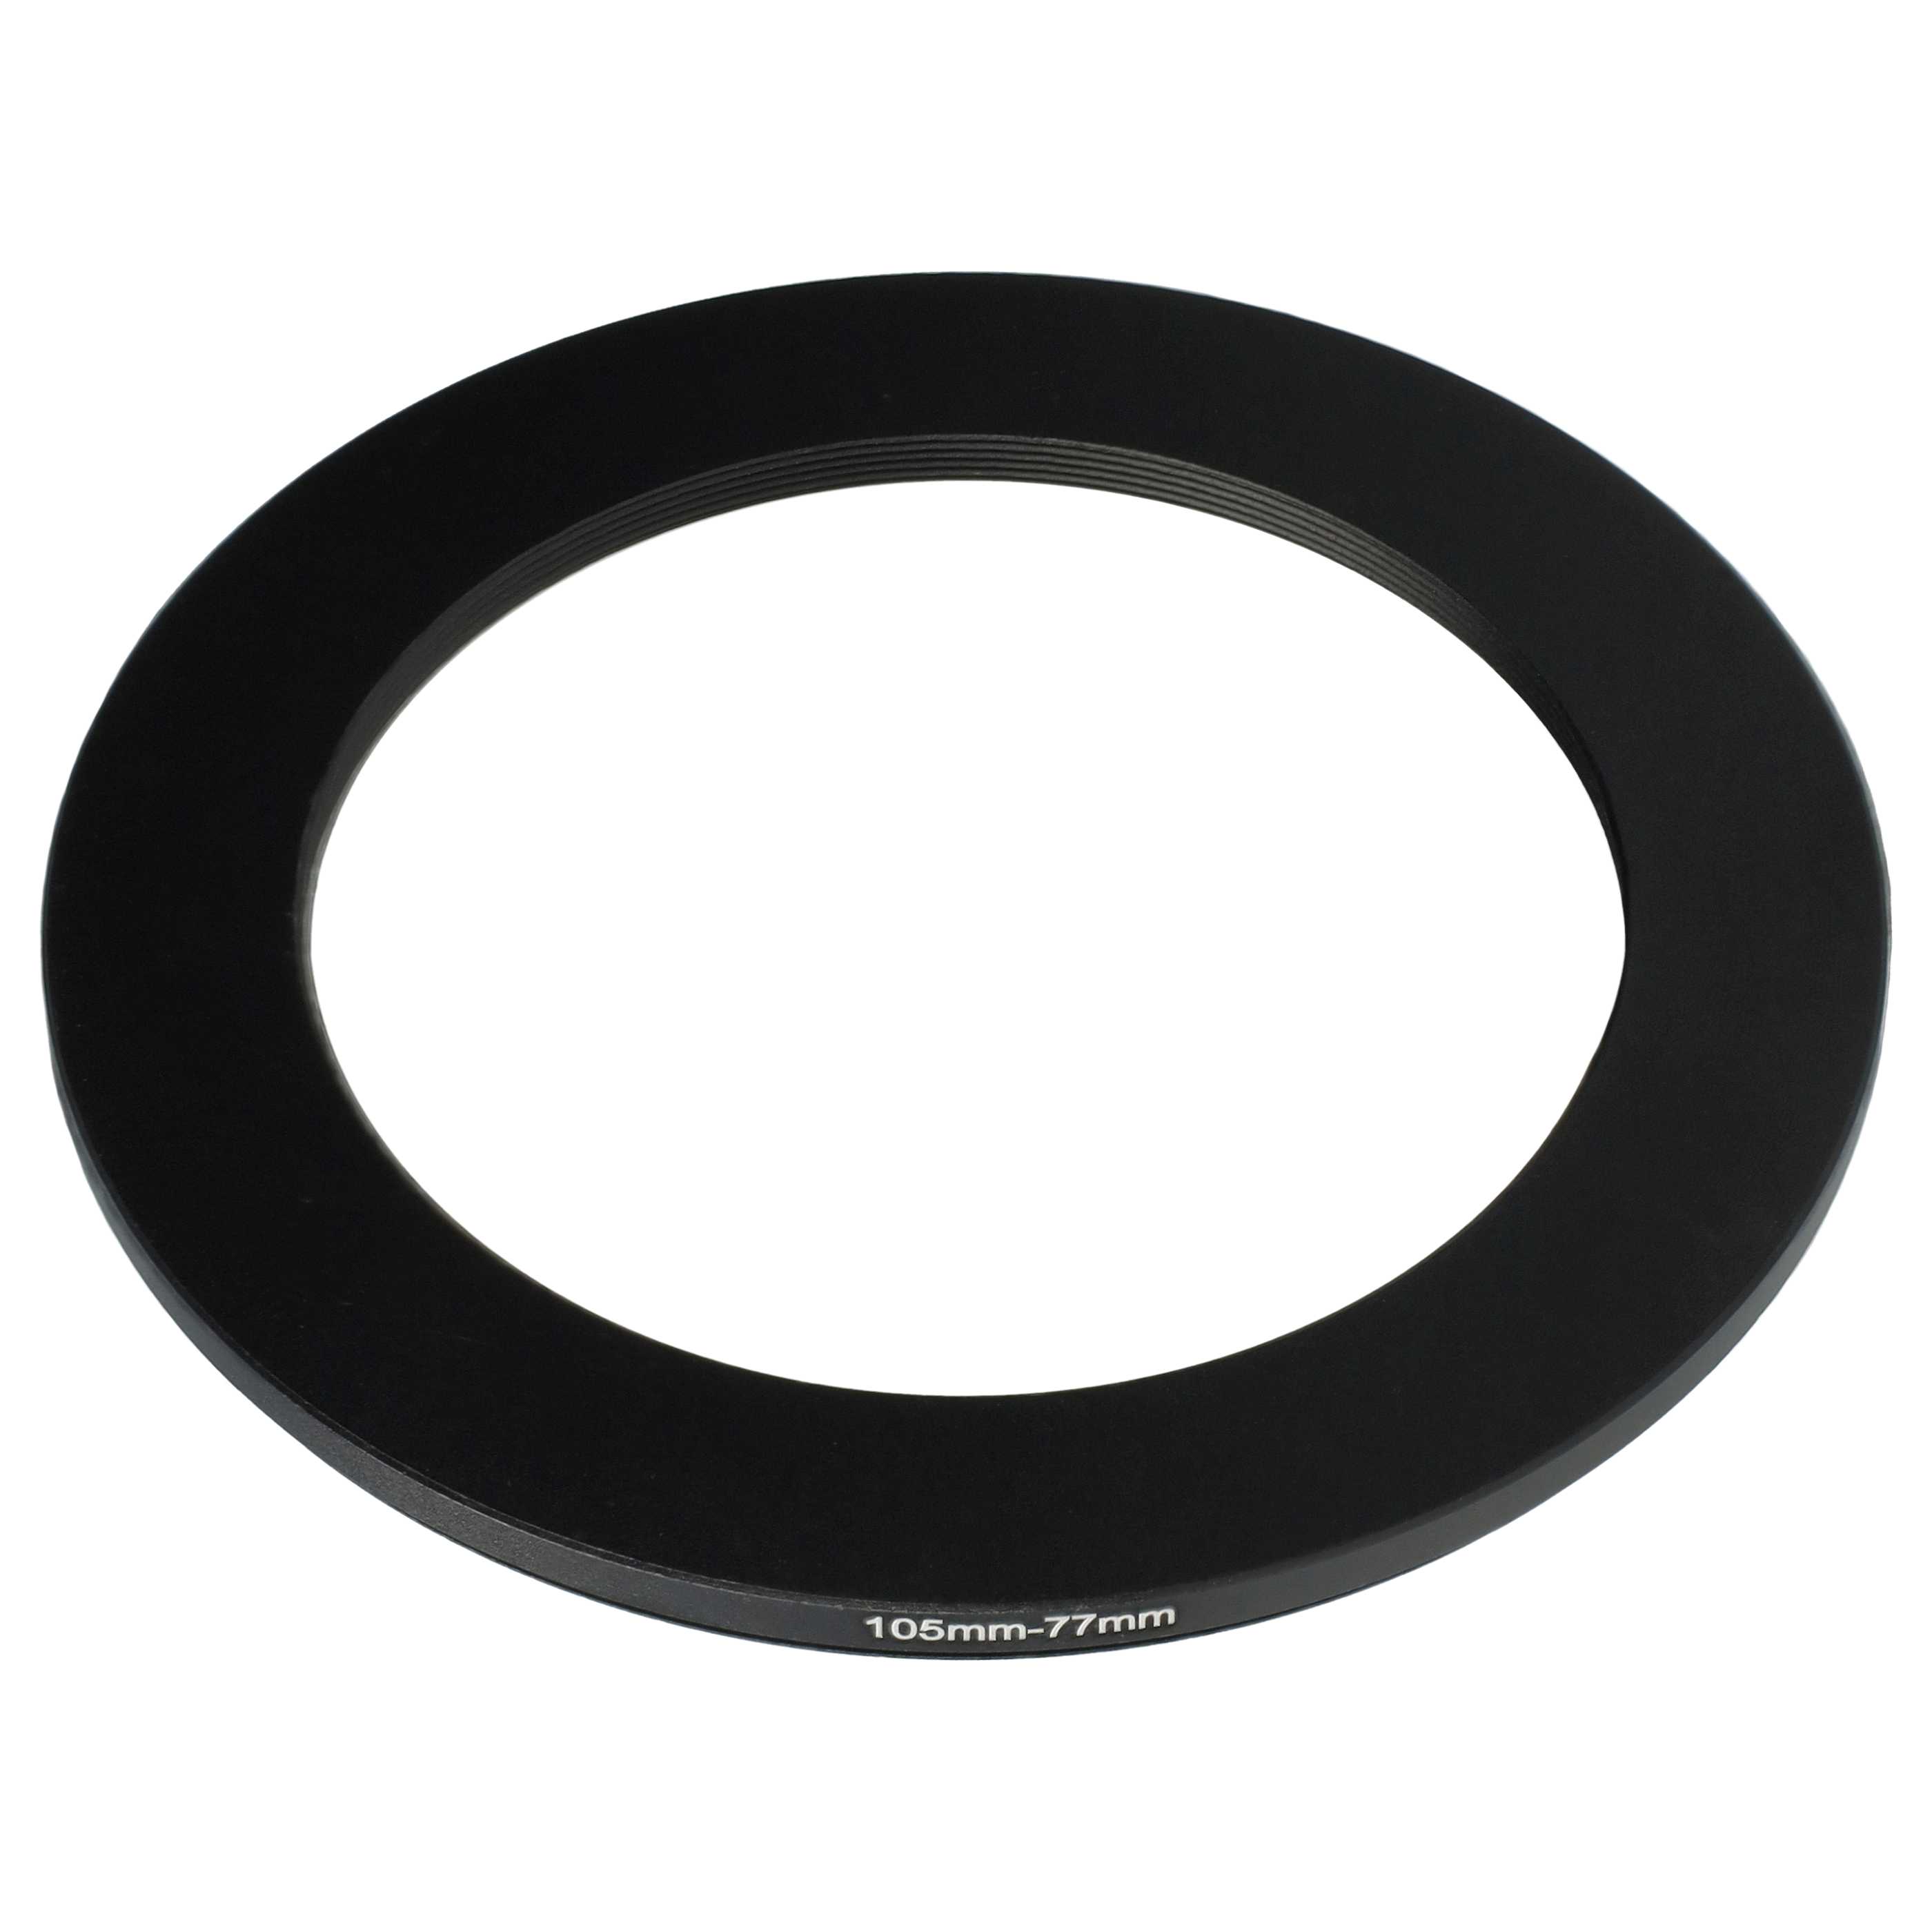 Redukcja filtrowa adapter Step-Down 105 mm - 77 mm pasująca do obiektywu - metal, czarny